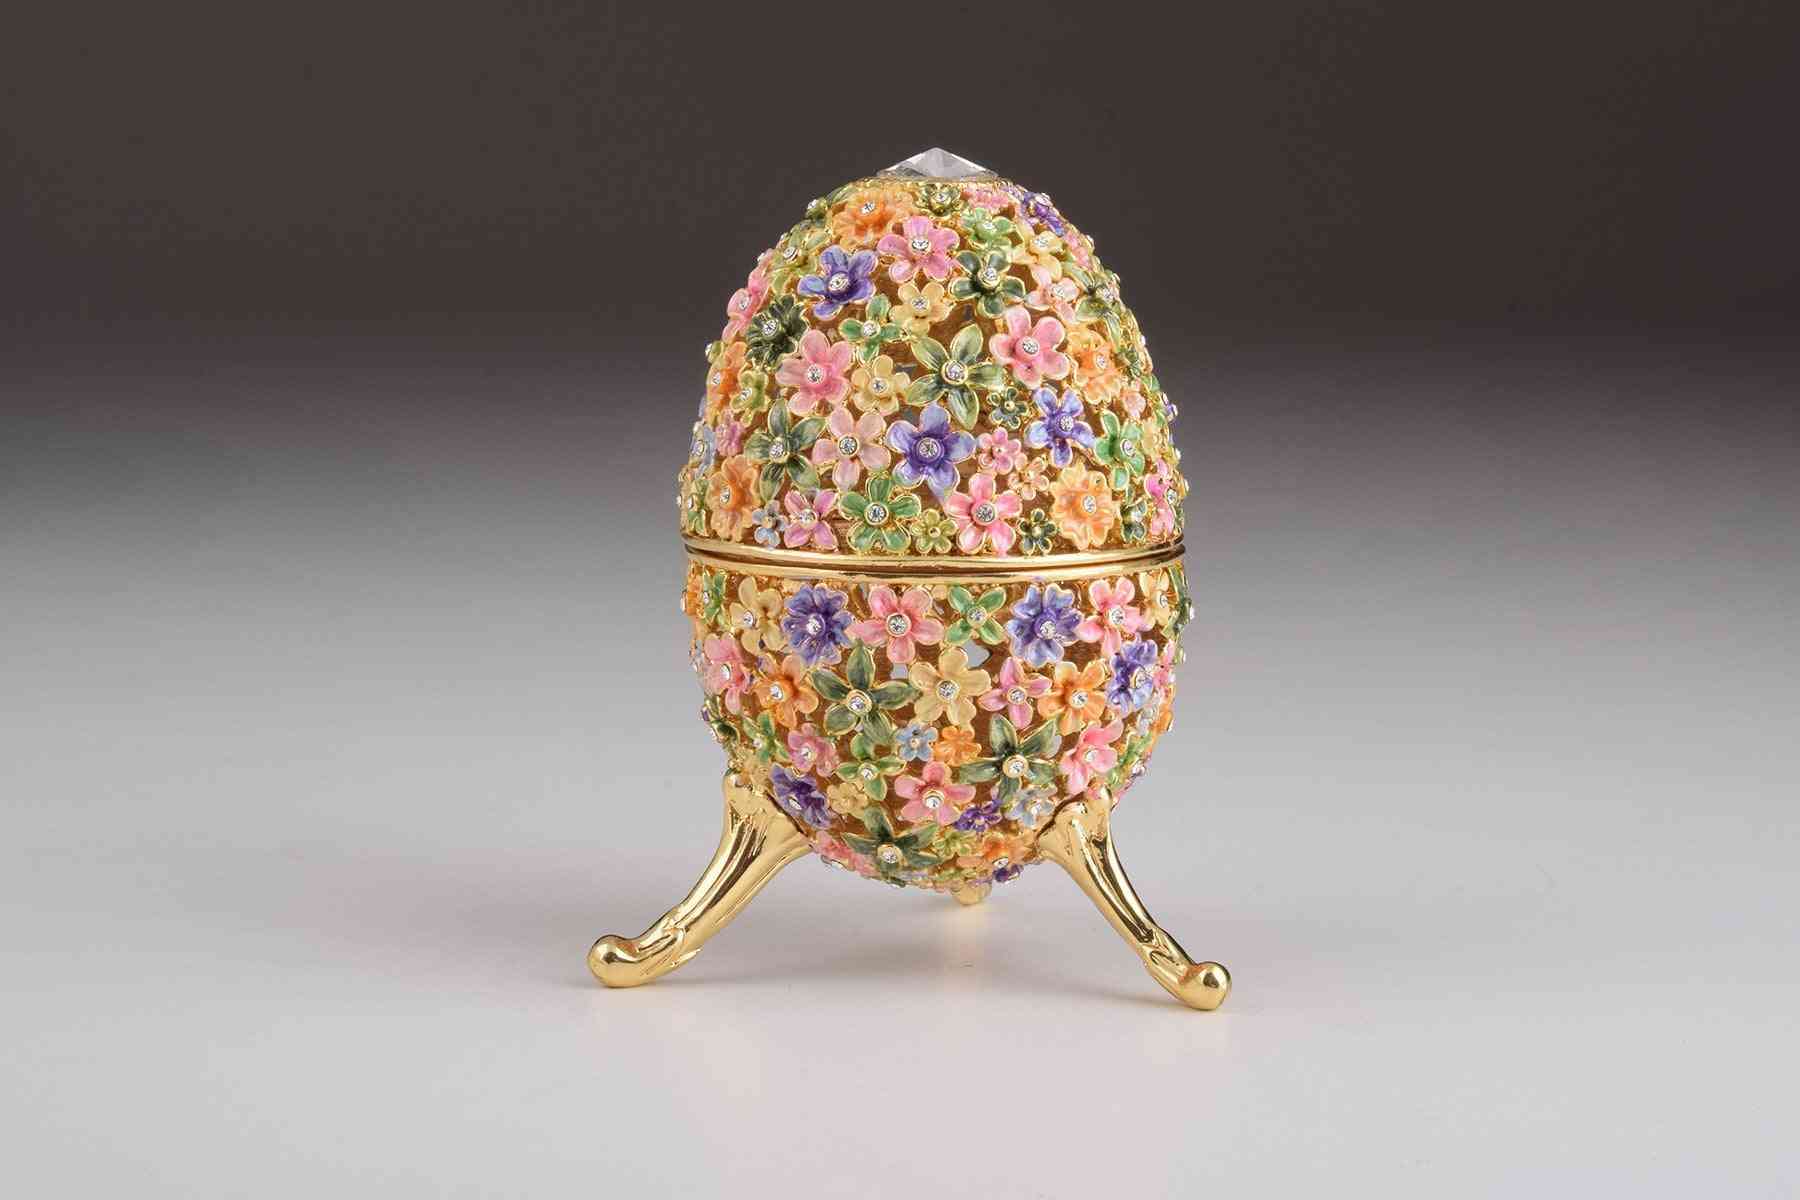 Zlato s barevnými květy velikonoční vajíčko - krabička